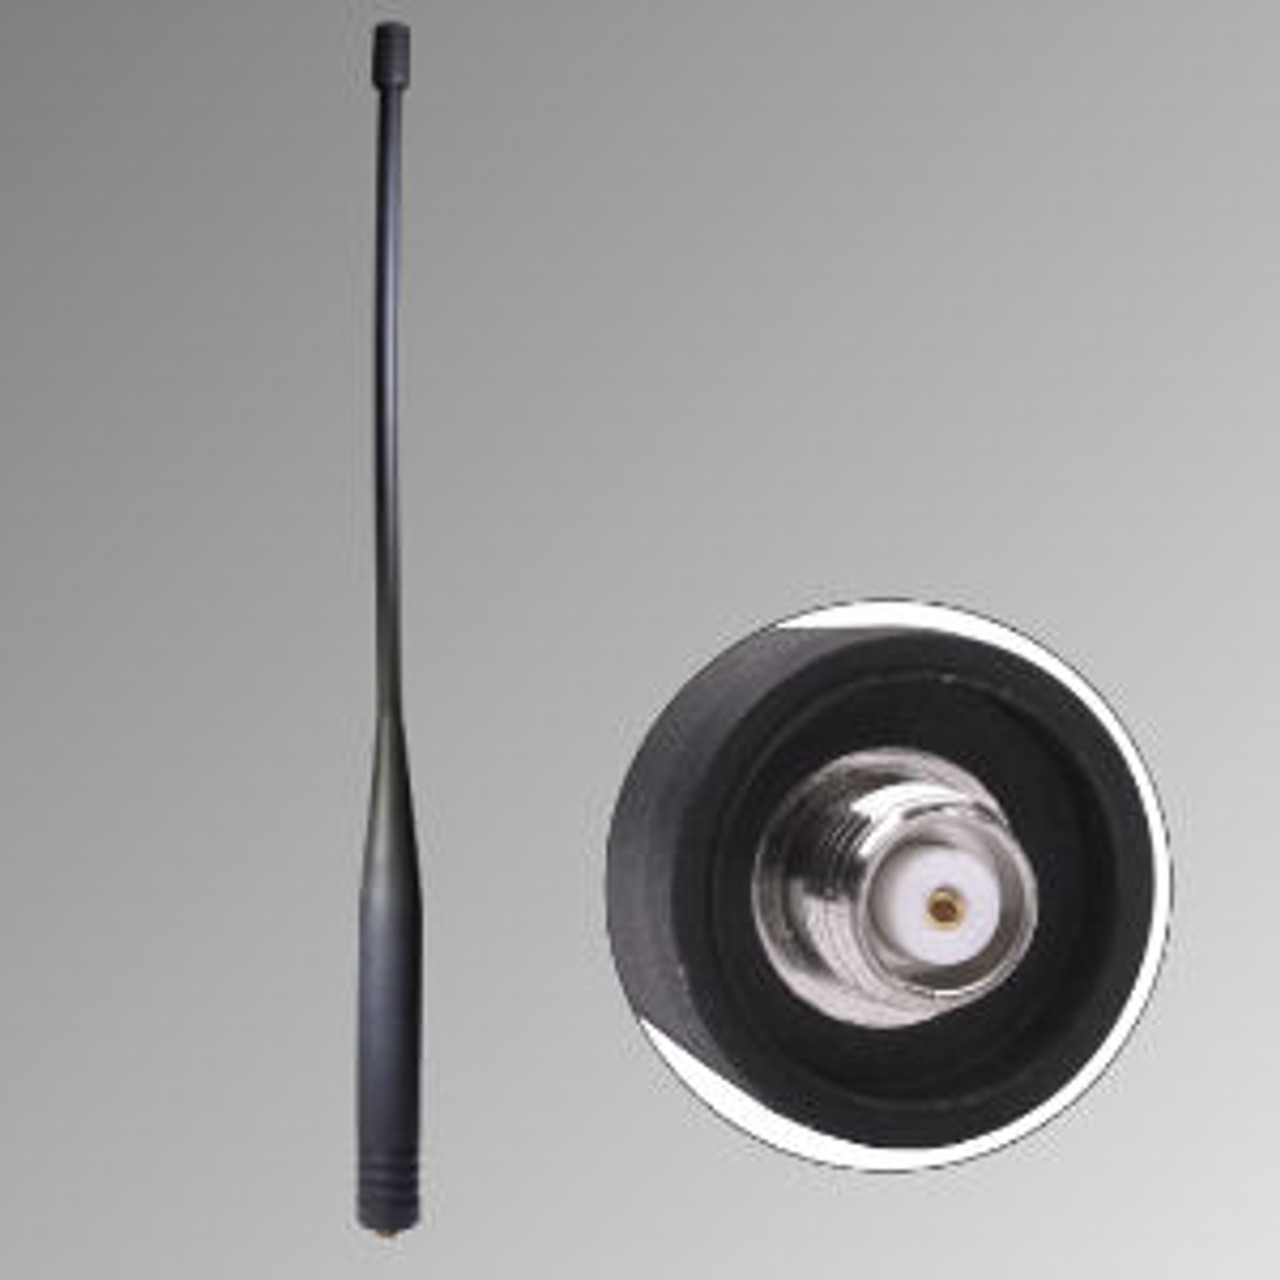 Motorola DGP4150 Extended Range Antenna - 11", VHF, 150-174 MHz